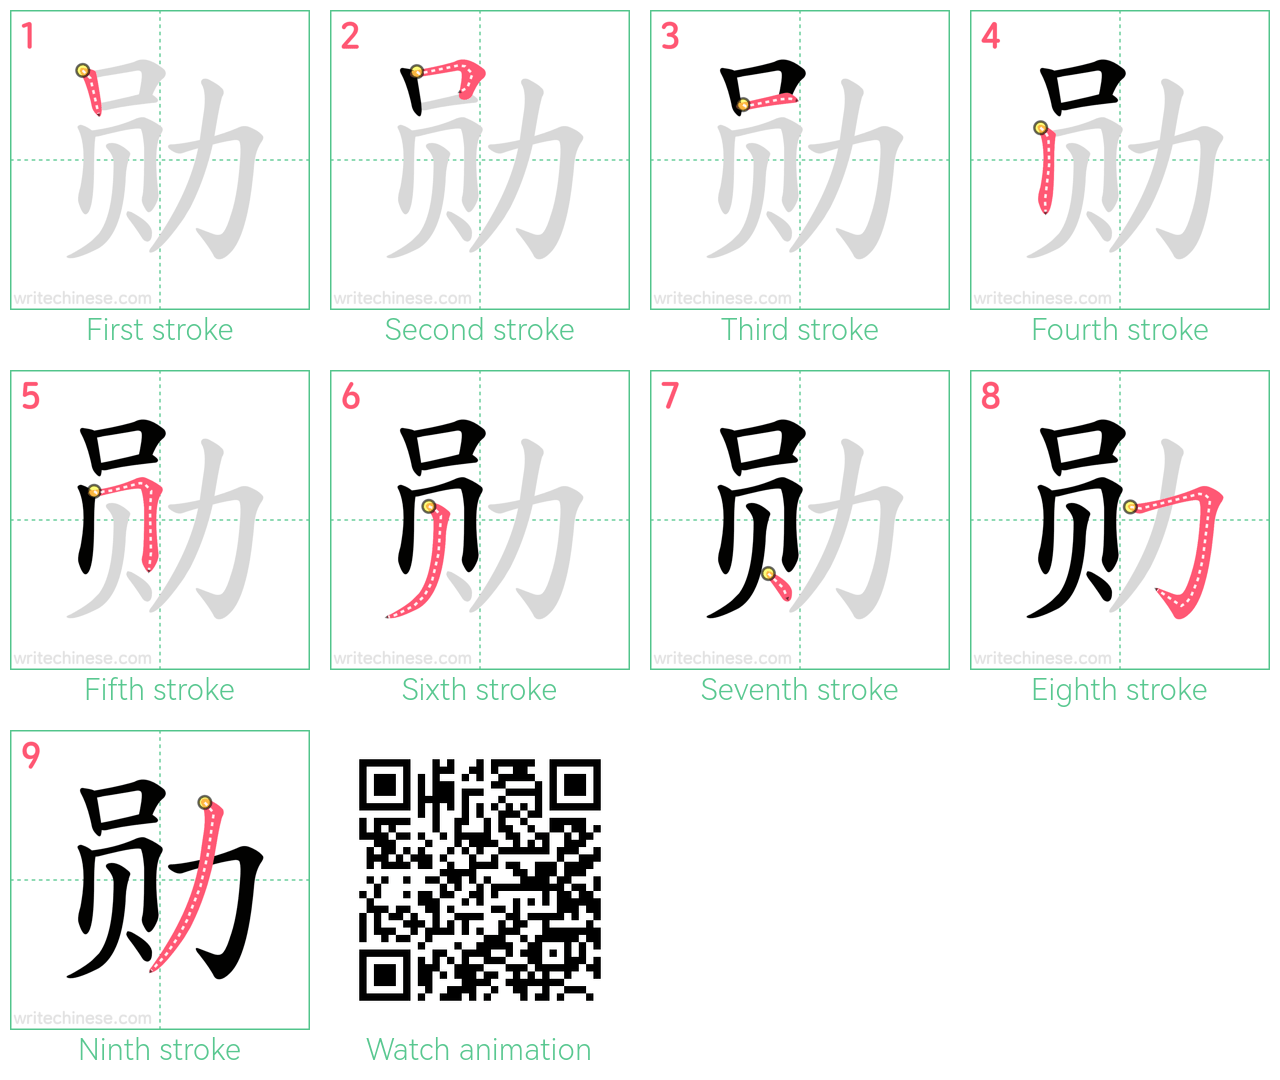 勋 step-by-step stroke order diagrams